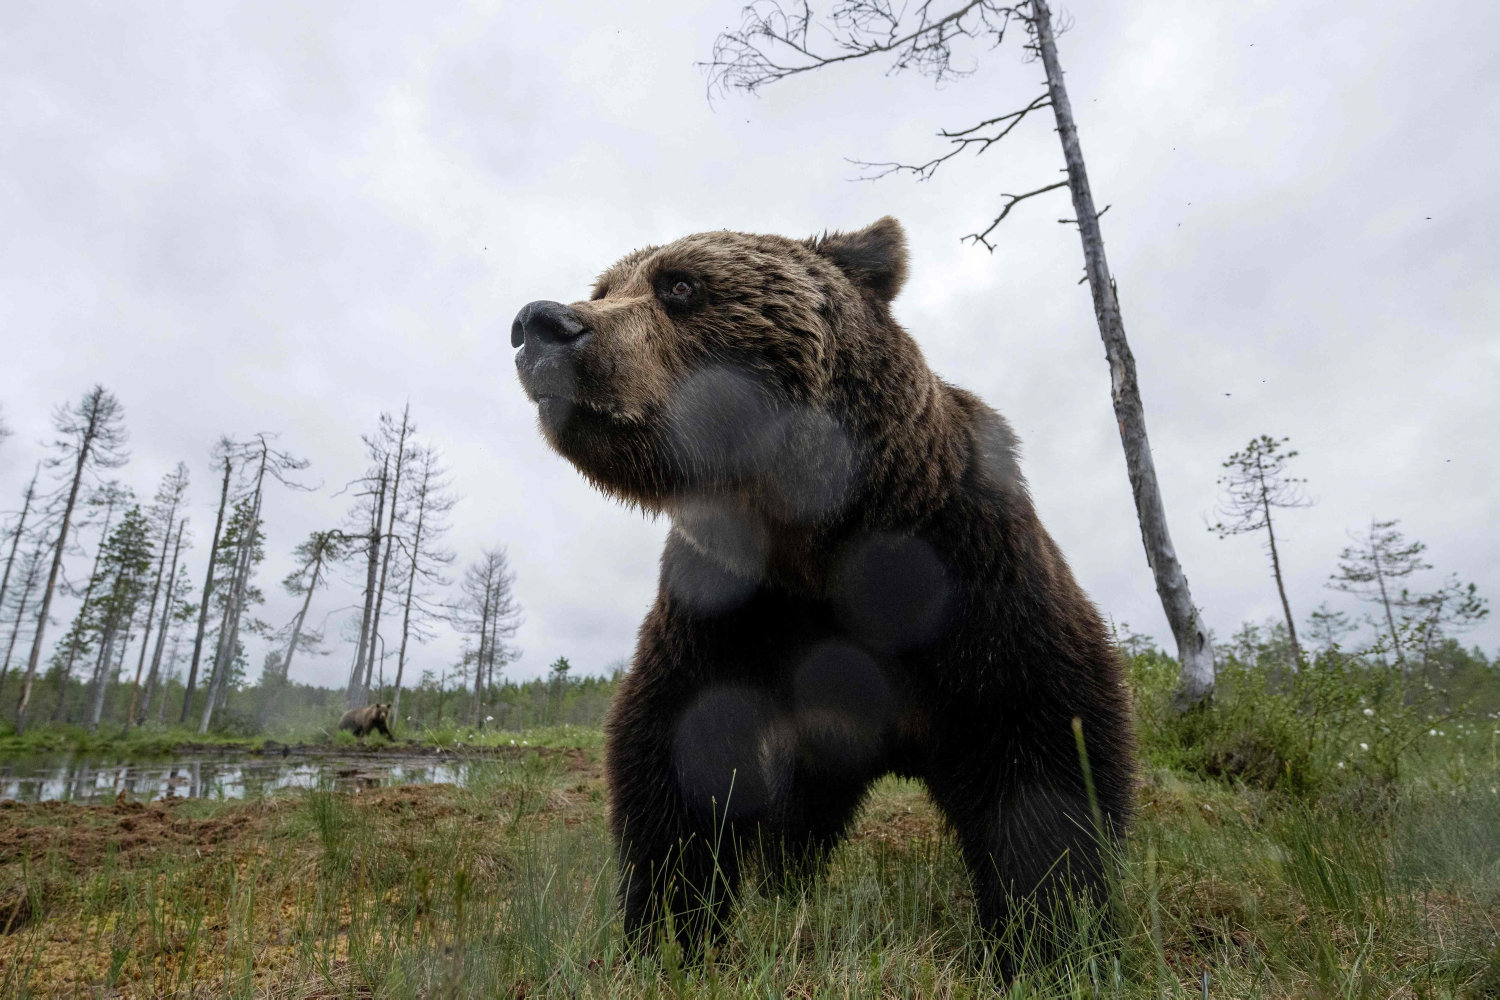 eftersøgt bjørn er blevet skudt i slovakiet